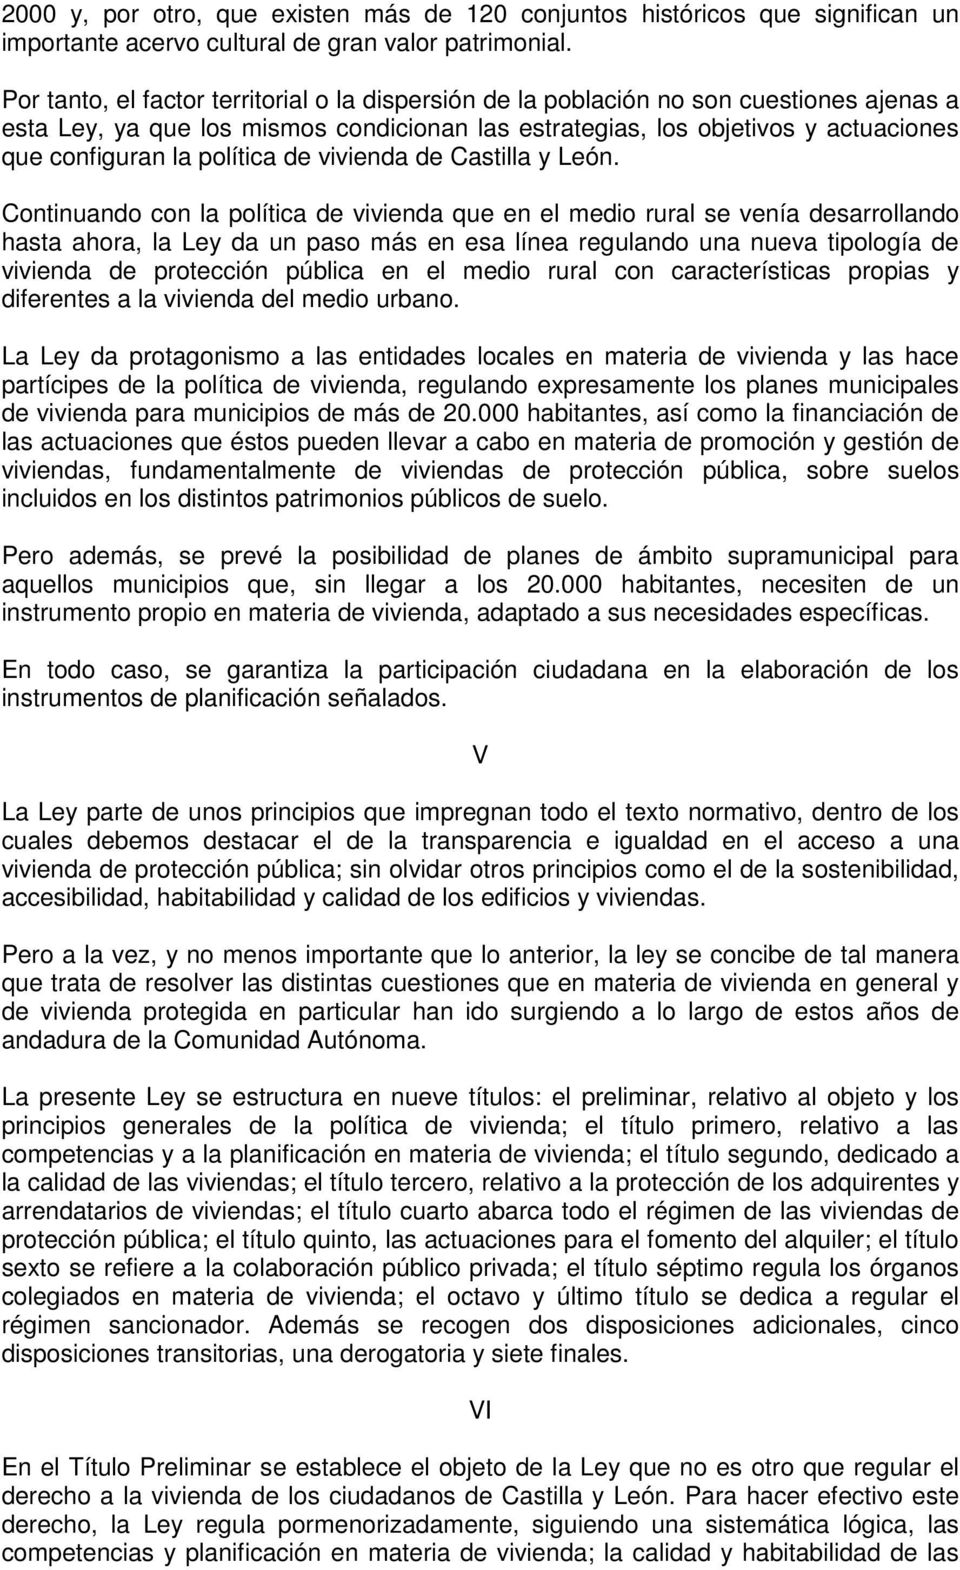 política de vivienda de Castilla y León.